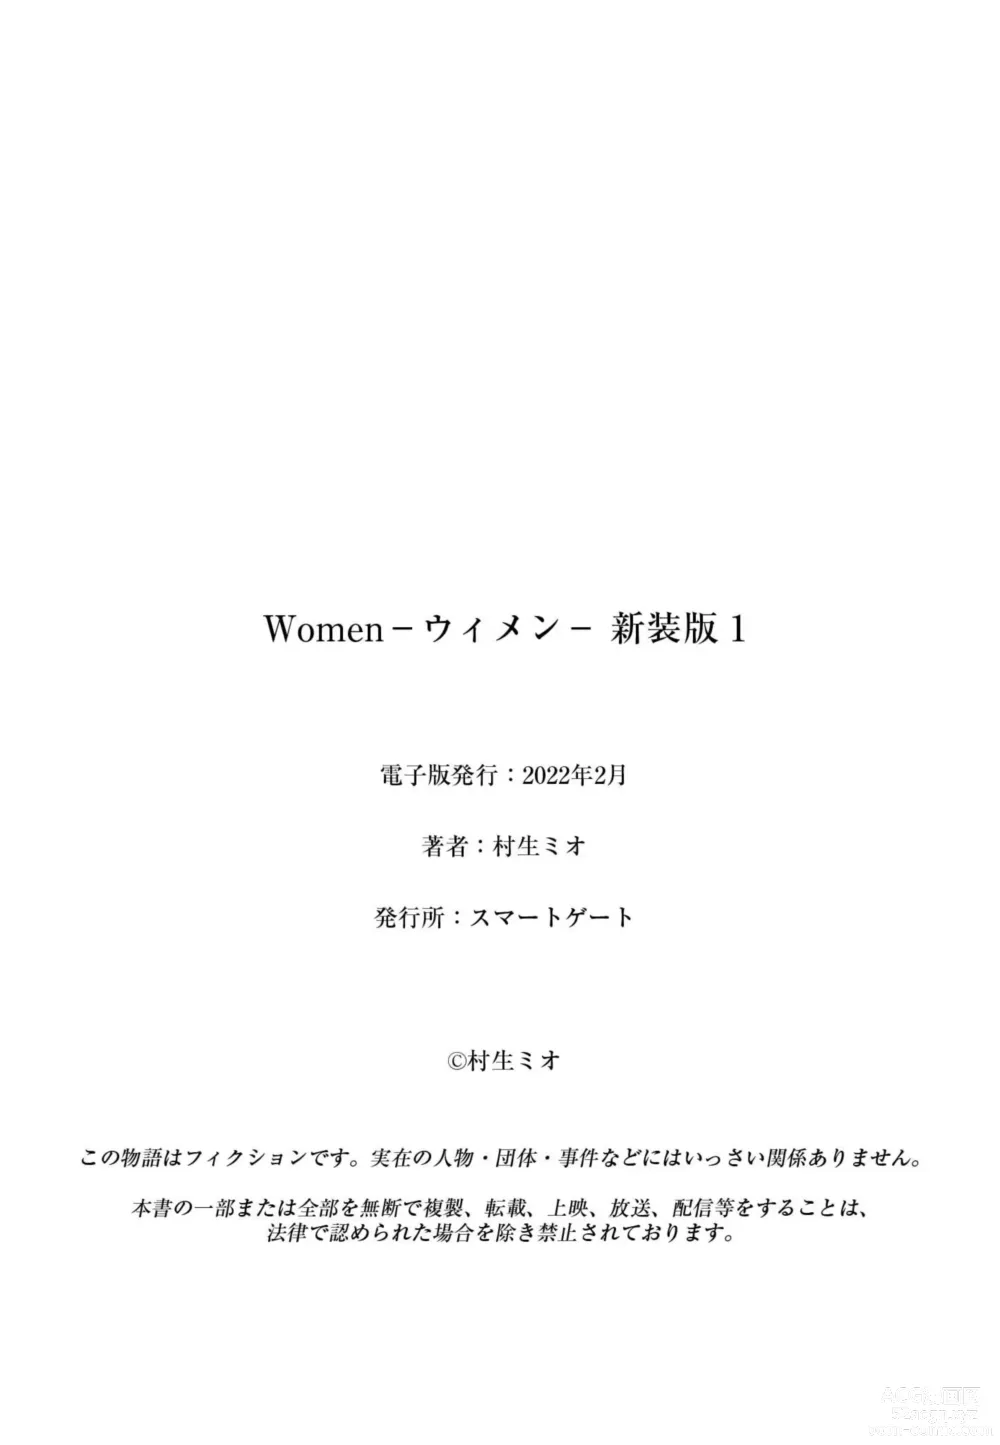 Page 202 of manga Women － Wimen － Shinsōban 1